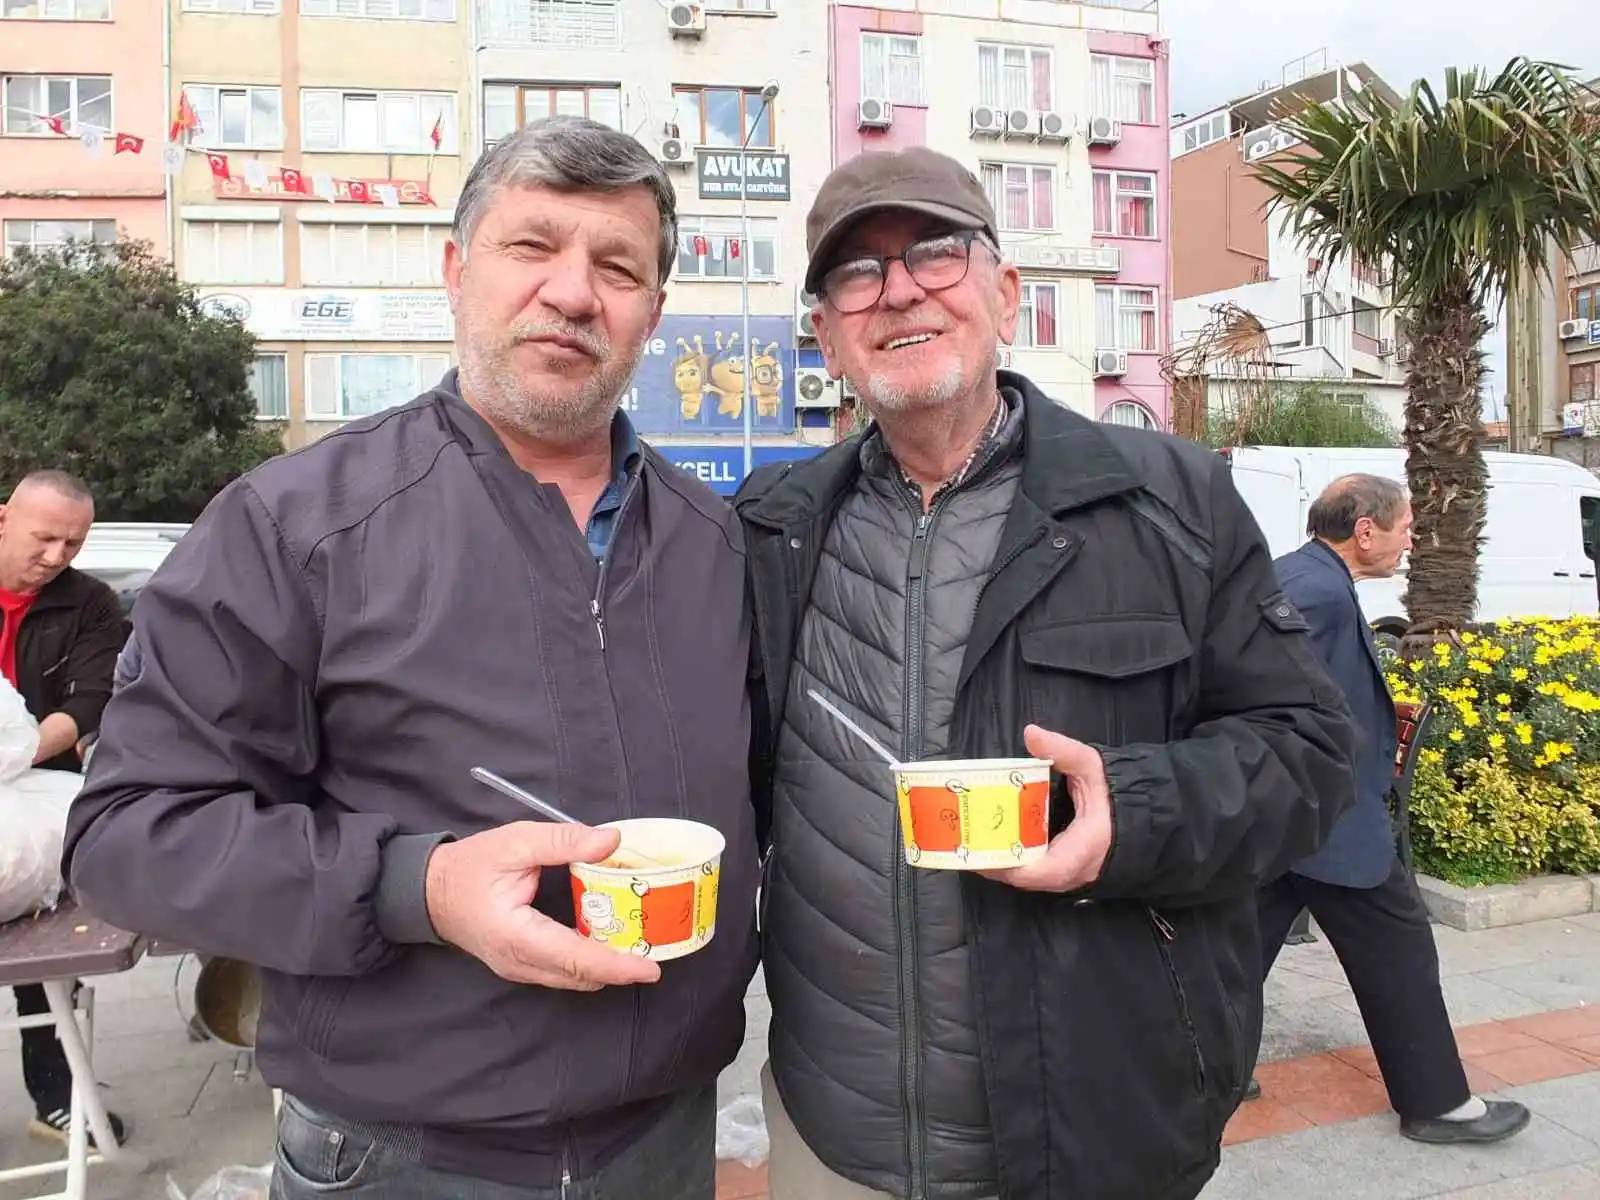 Balıkesir’de 2 bin kişiye zeytinyağlı çorba ikramı
